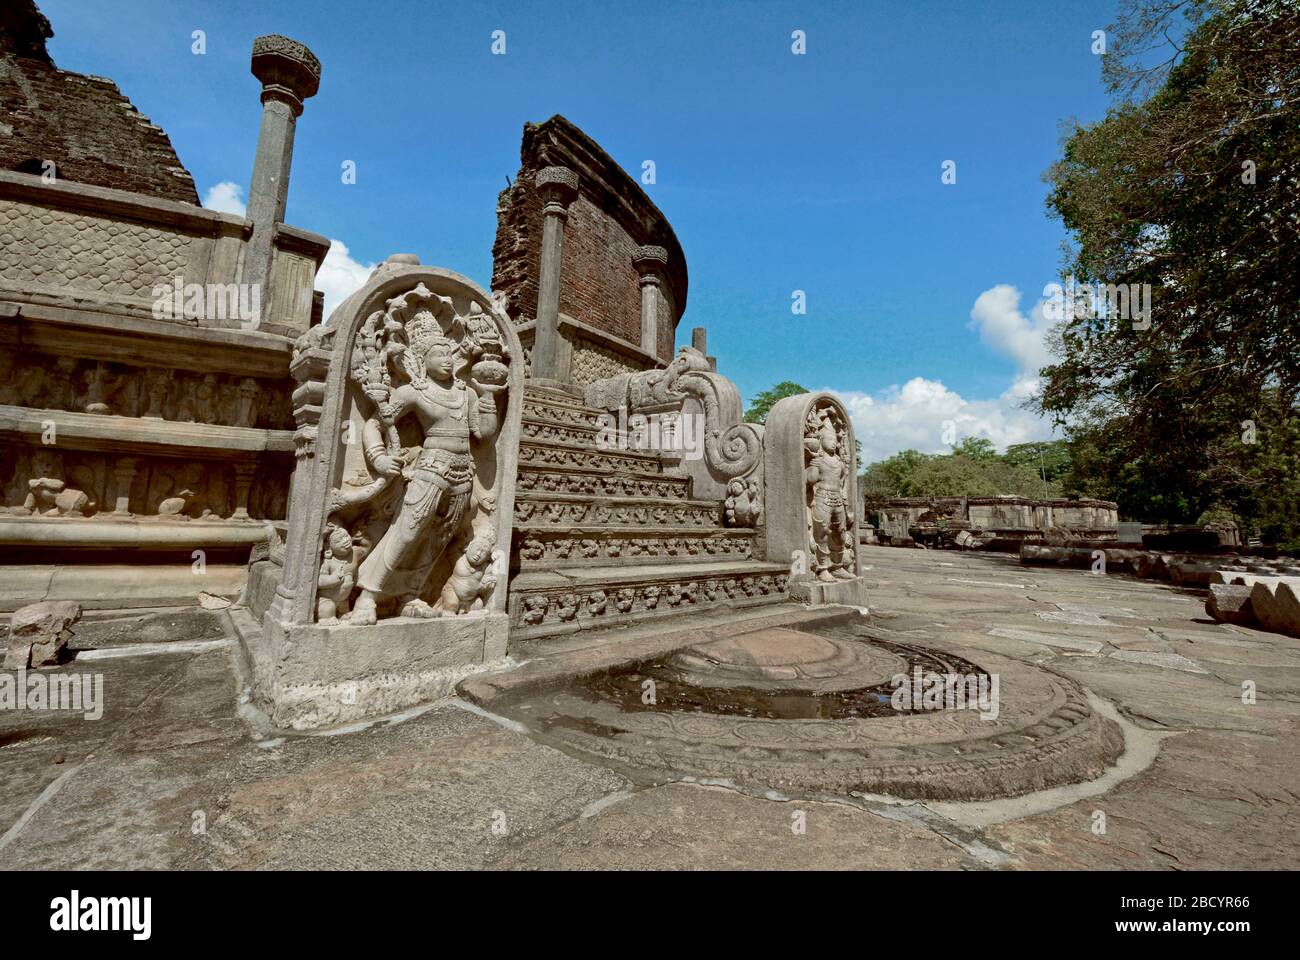 Ruinas de Polonnaruwa, Sri Lanka. Polonnaruwa es el segundo más antiguo de Sri Lankas Kingdoms Foto de stock